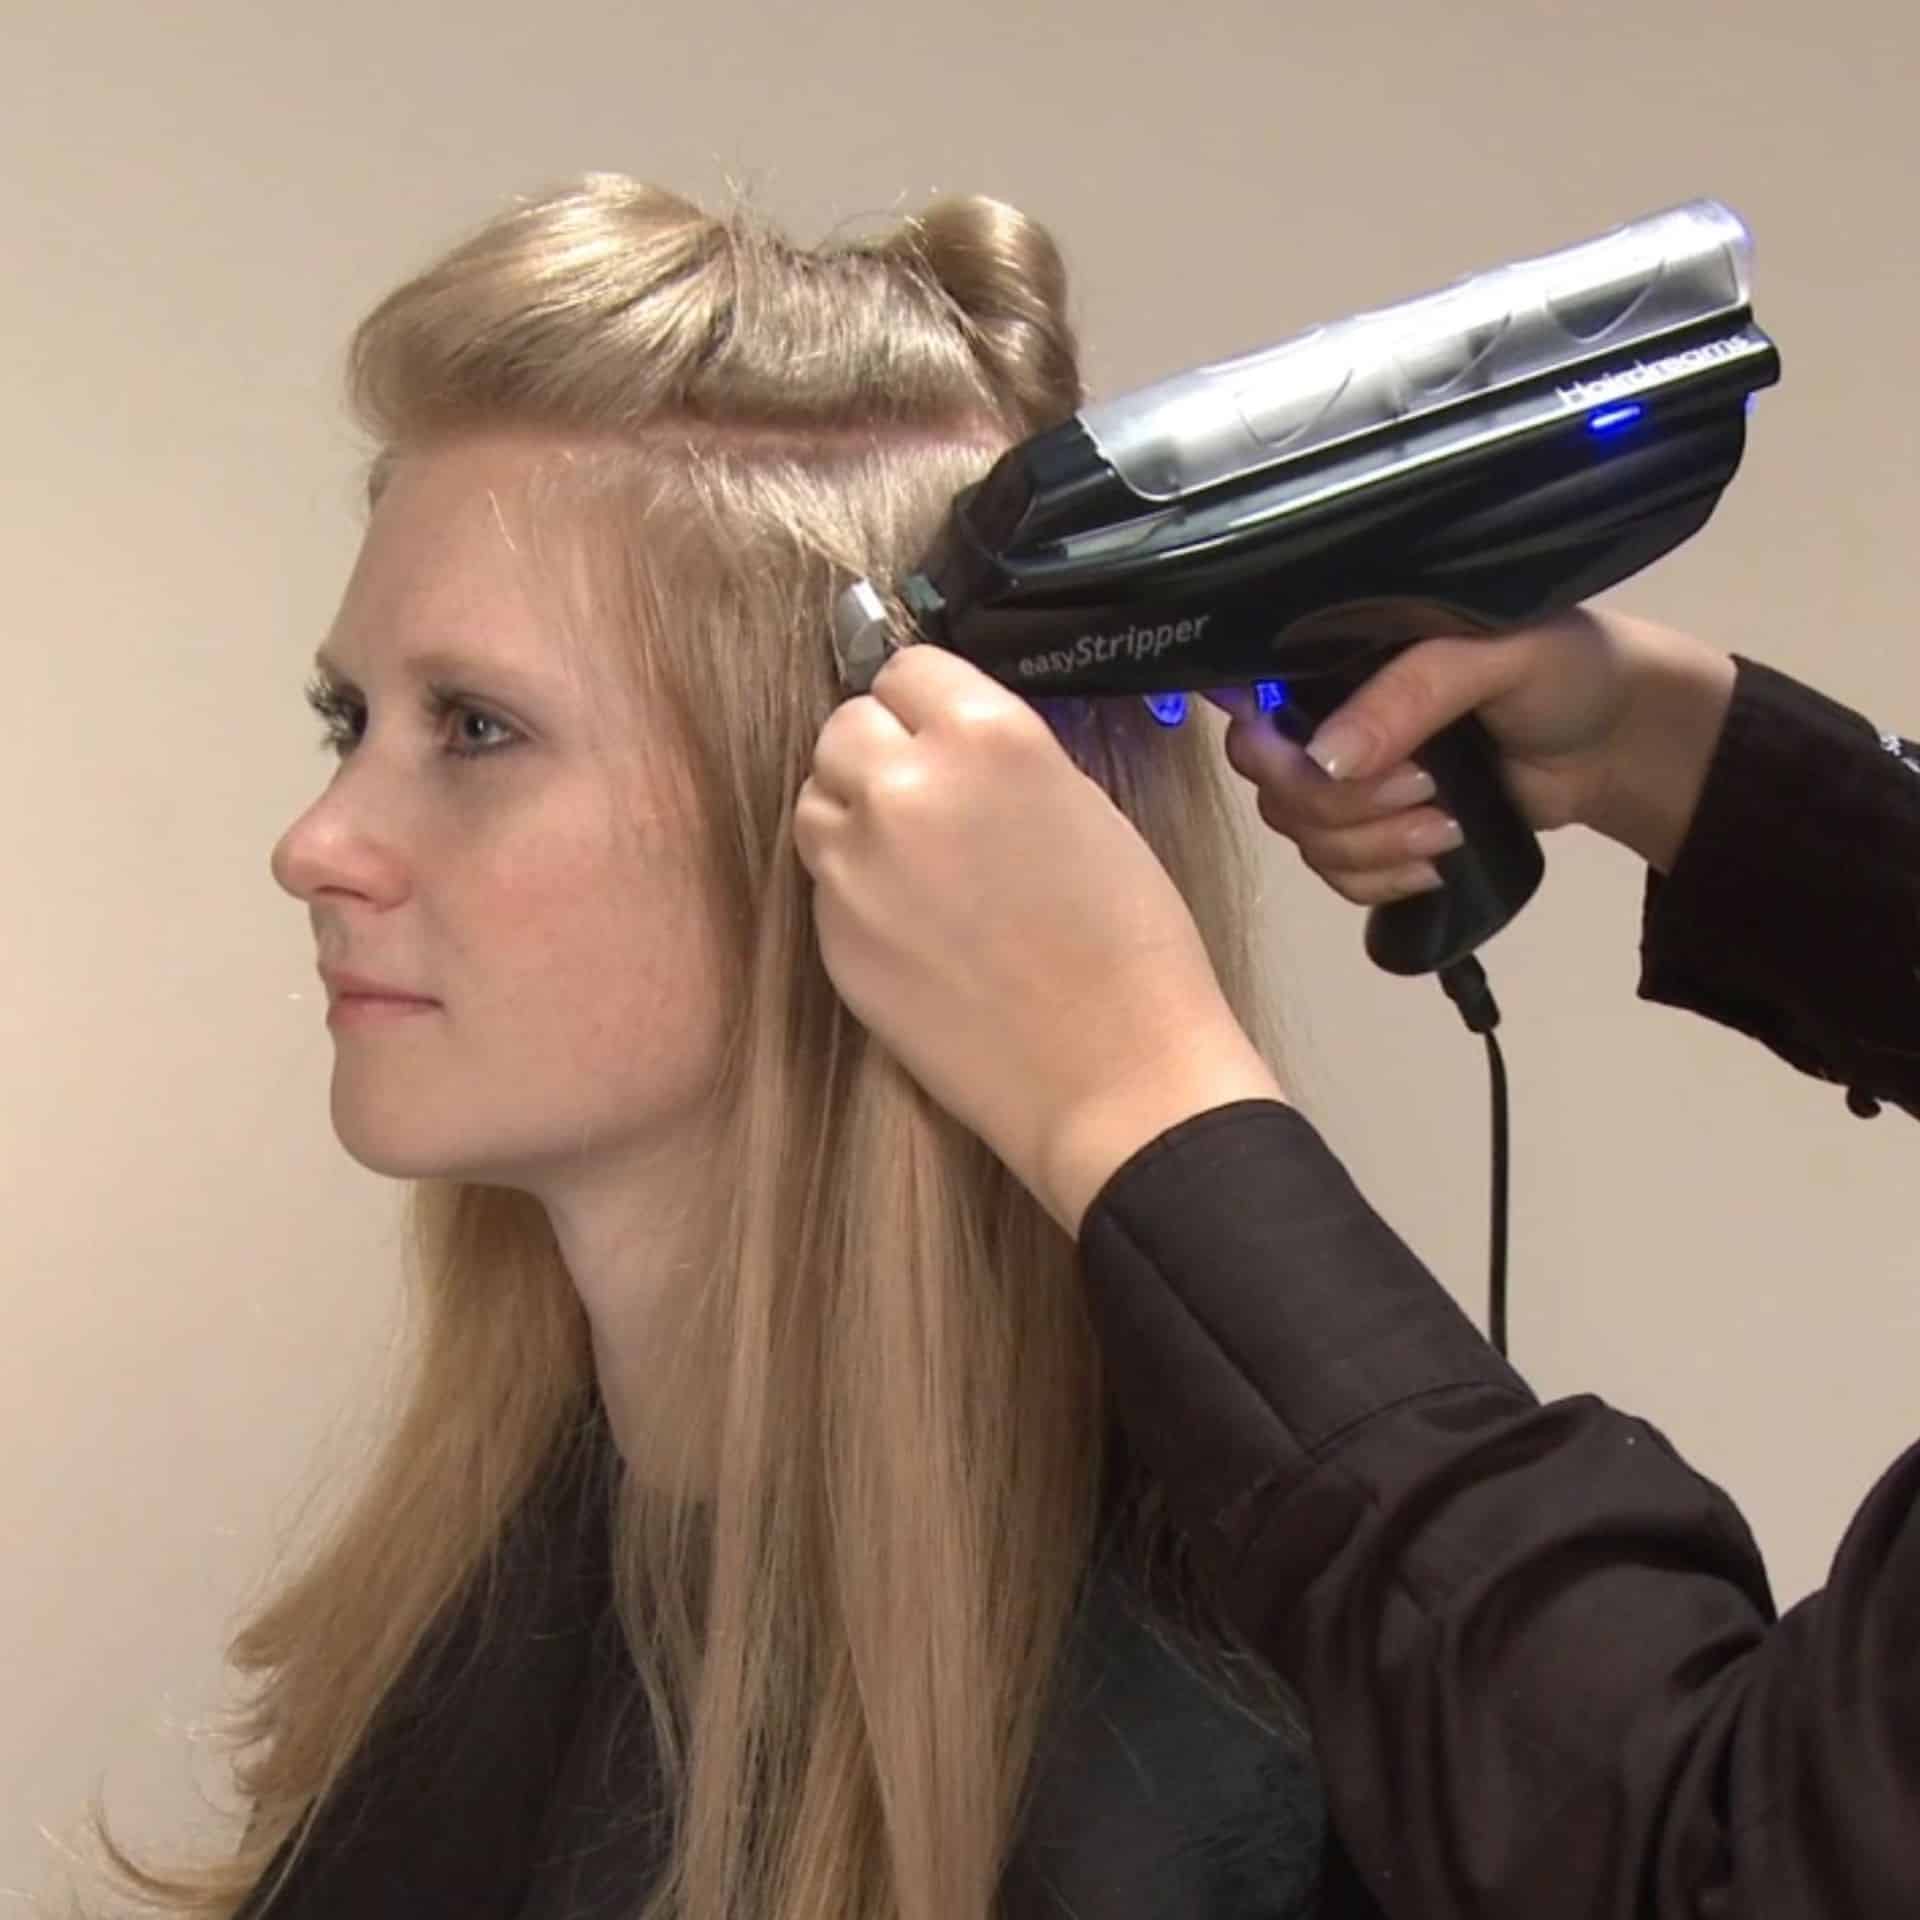 Fryzjerka usuwa przedłużenia za pomocą EasyStripper firmy Hairdreams.